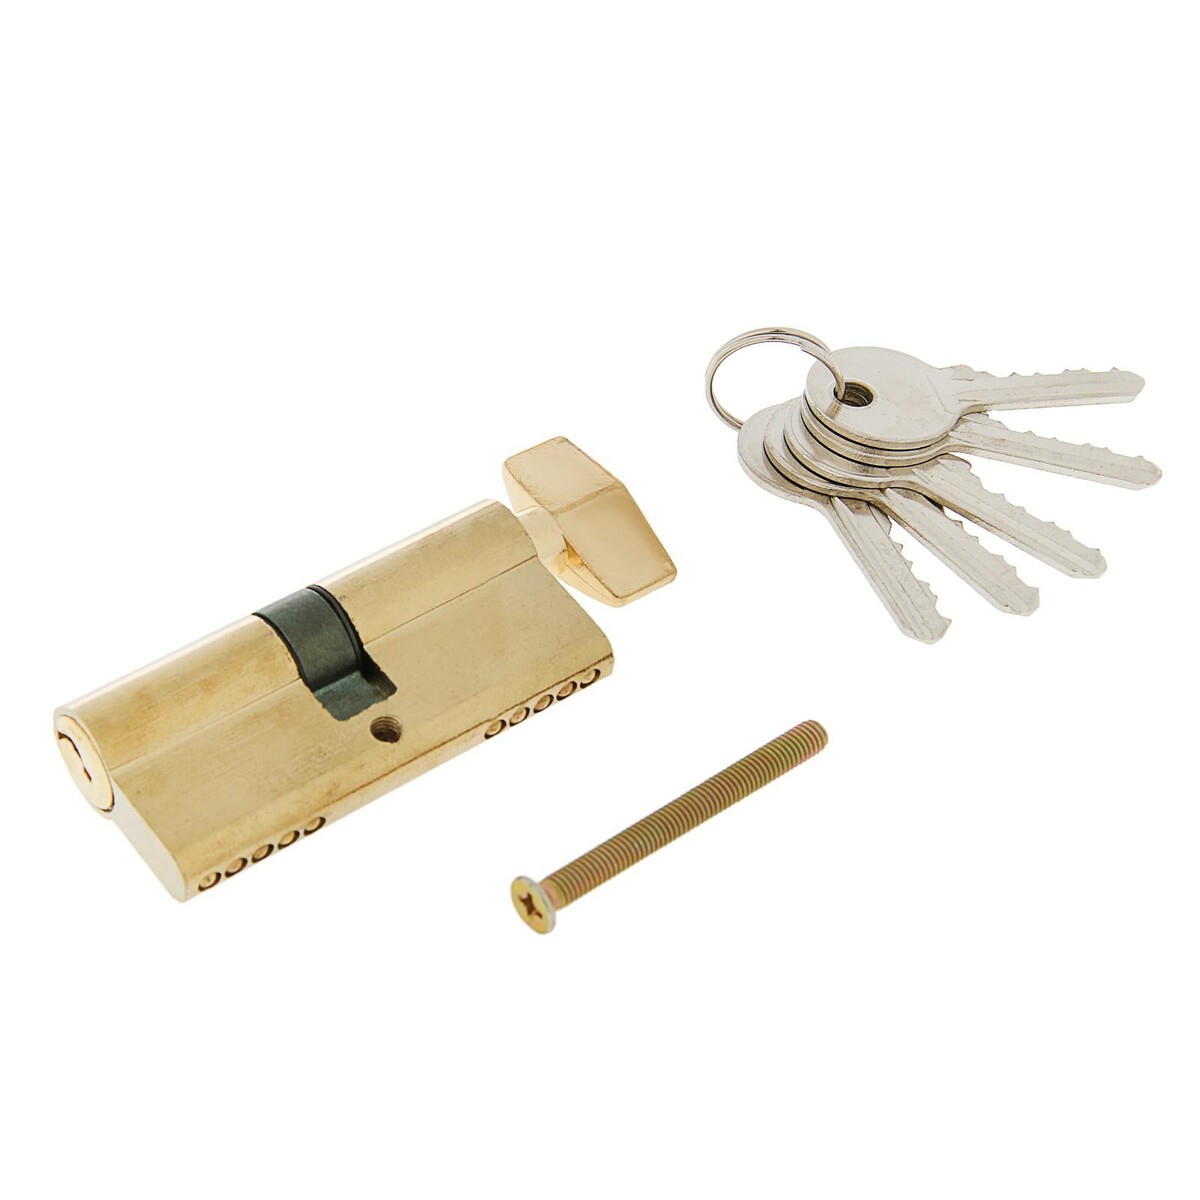 Цилиндровый механизм, 70 мм, с вертушкой, английский ключ, 5 ключей, цвет золото замок навесной аллюр вс1ч 460 цилиндровый 5 ключей